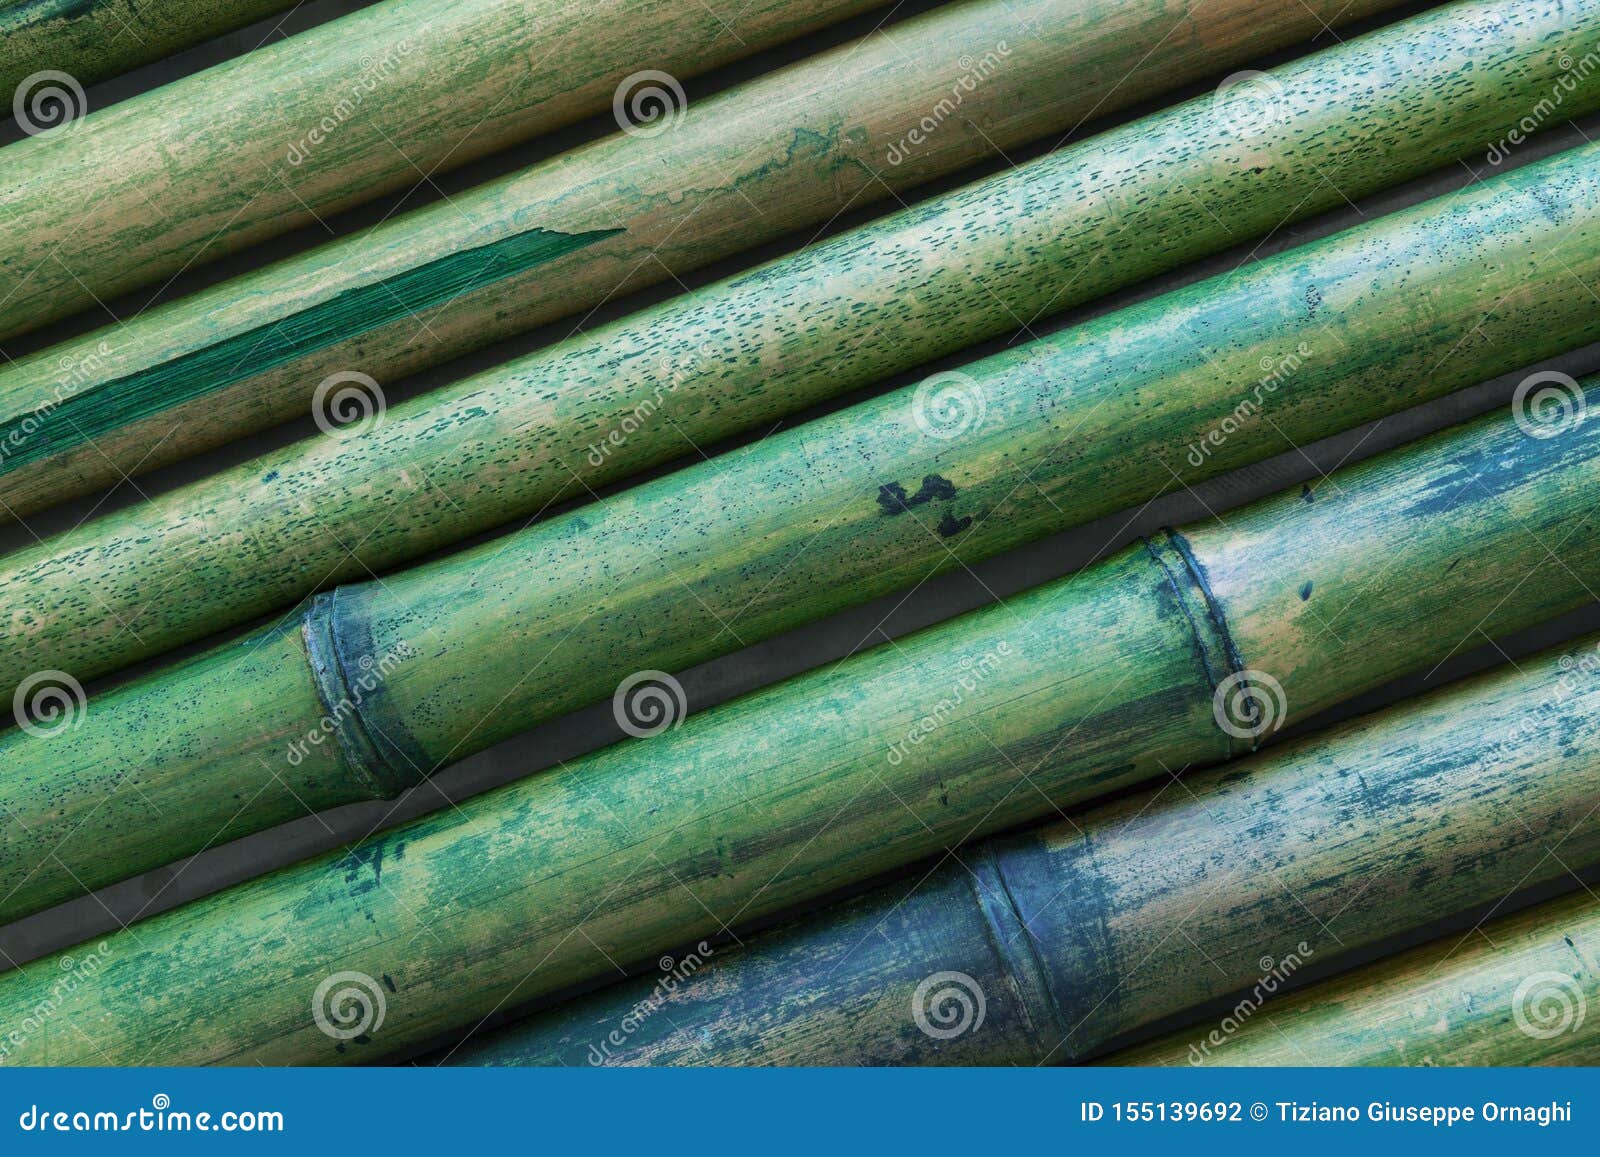 visualizzazione delle traduzioni per composizione di sfondo con canne di bambu traduci invece composizione di sfondo con canne di